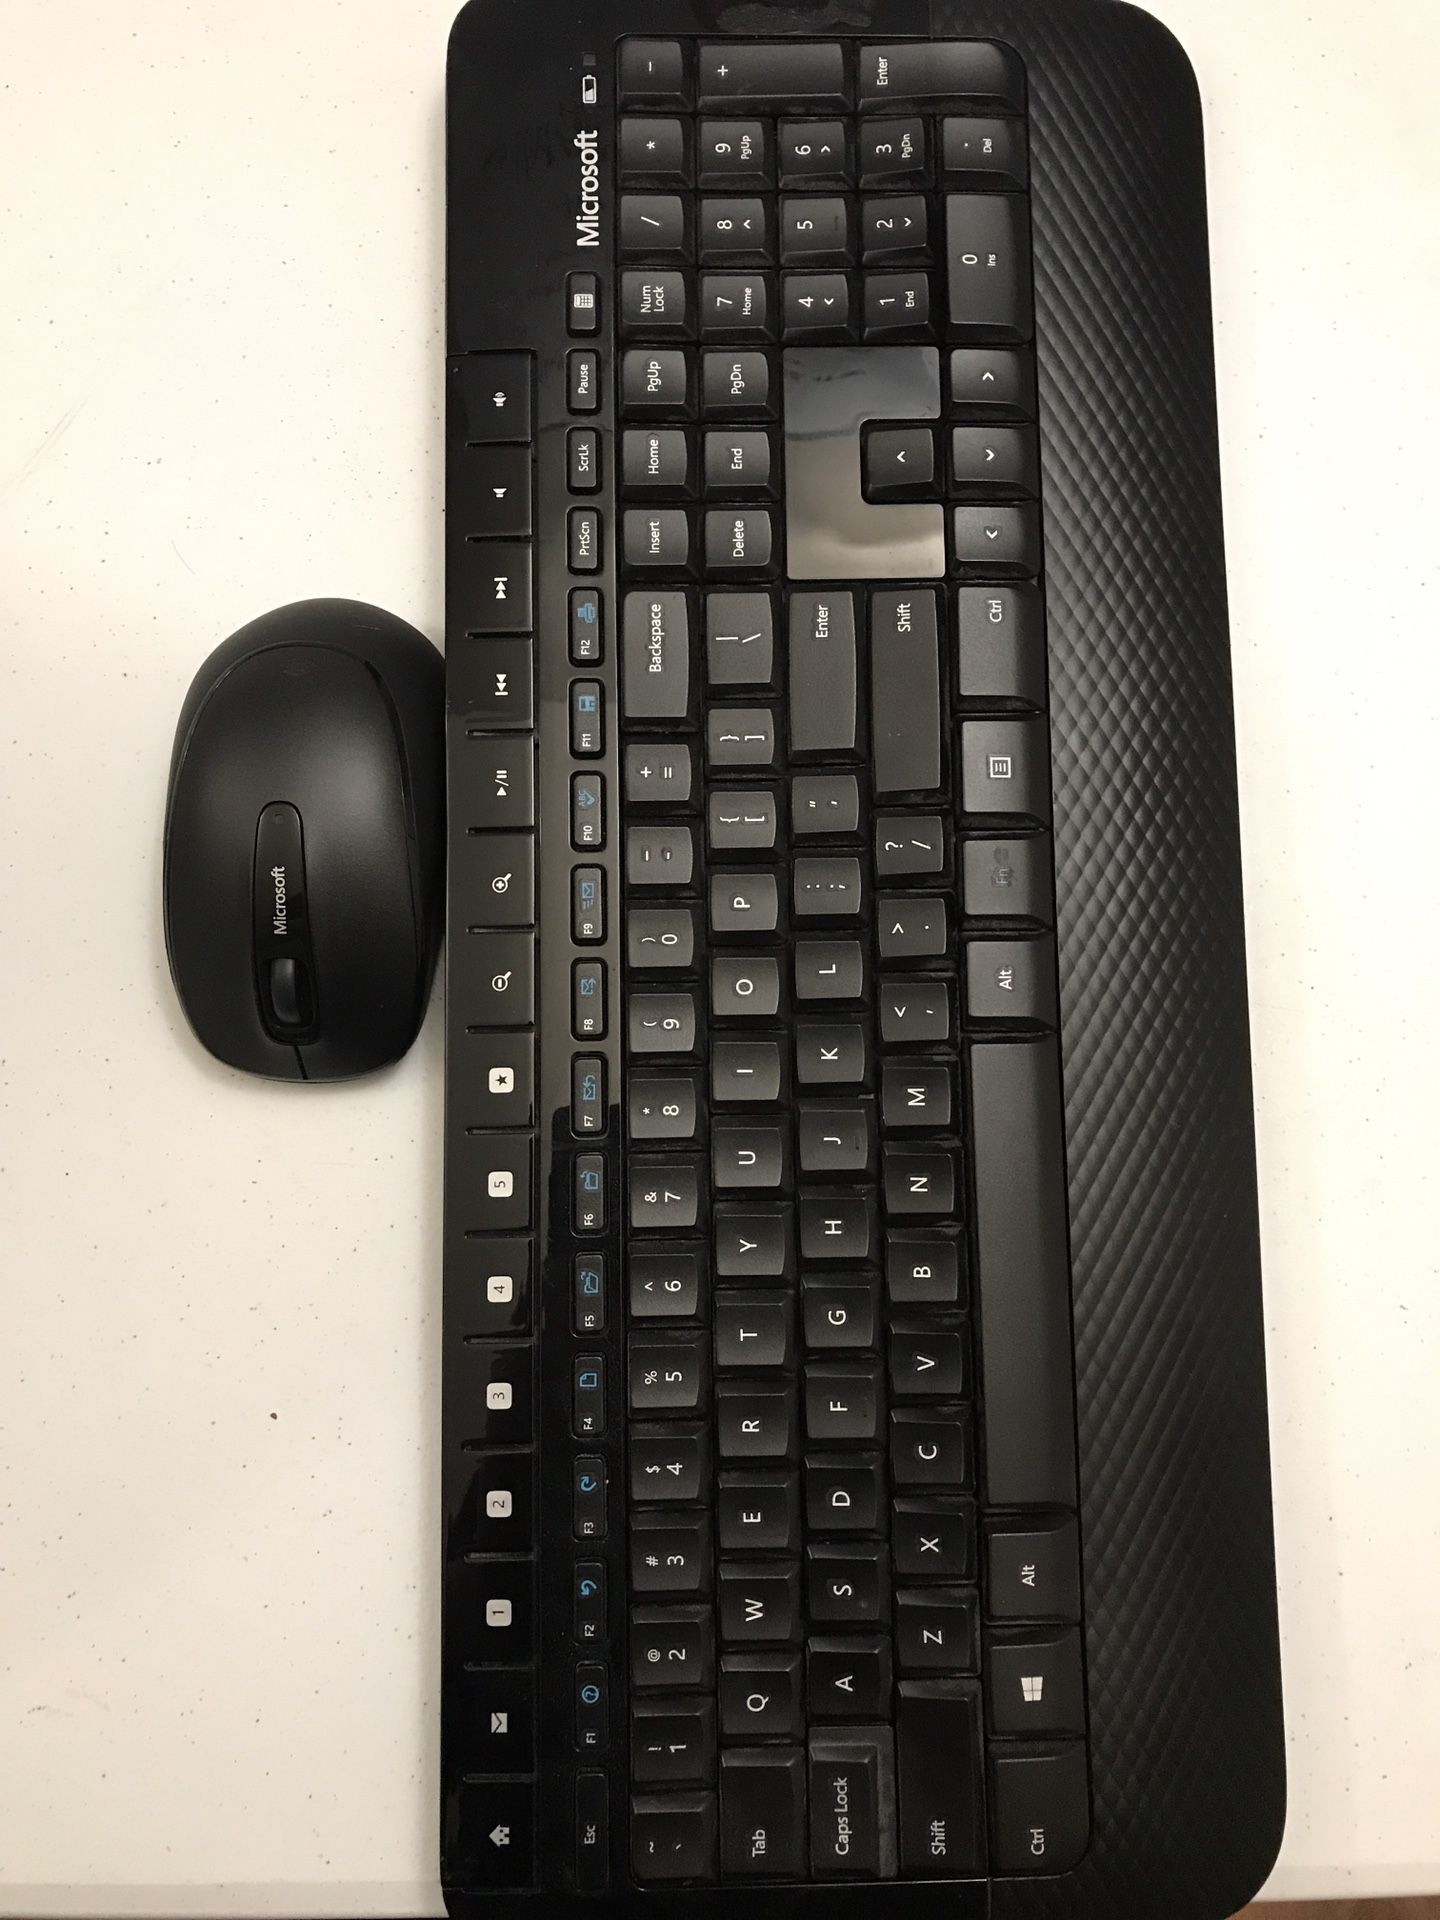 Microsoft wireless keyboard 2000 + Mouse